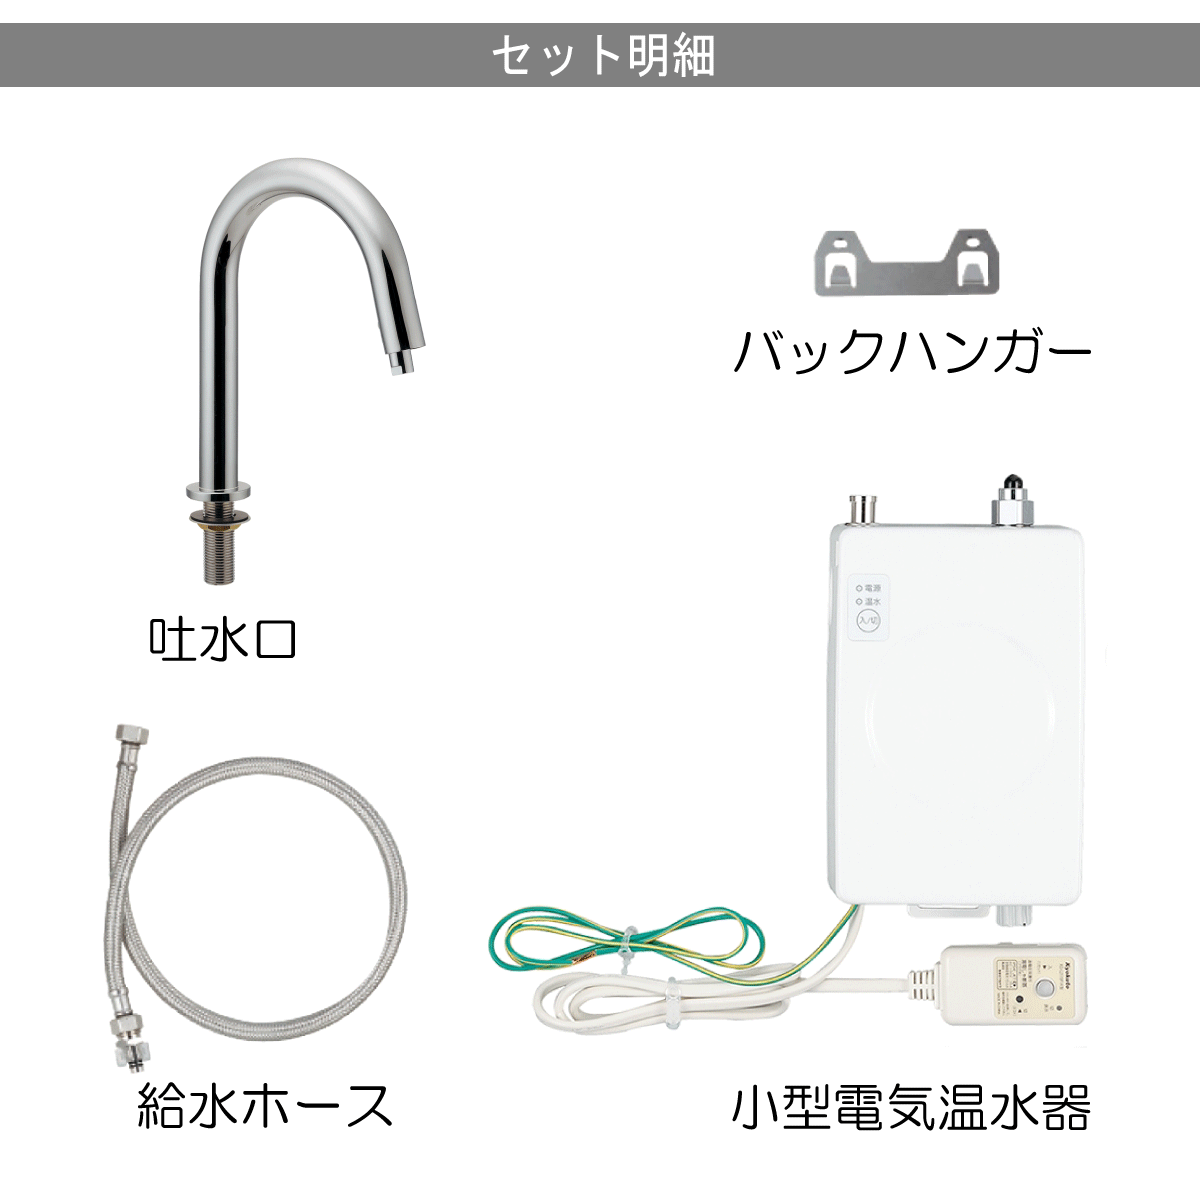 カクダイ(KAKUDAI) 小型電気温水器(センサー水栓つき) 239-001-2 - 3